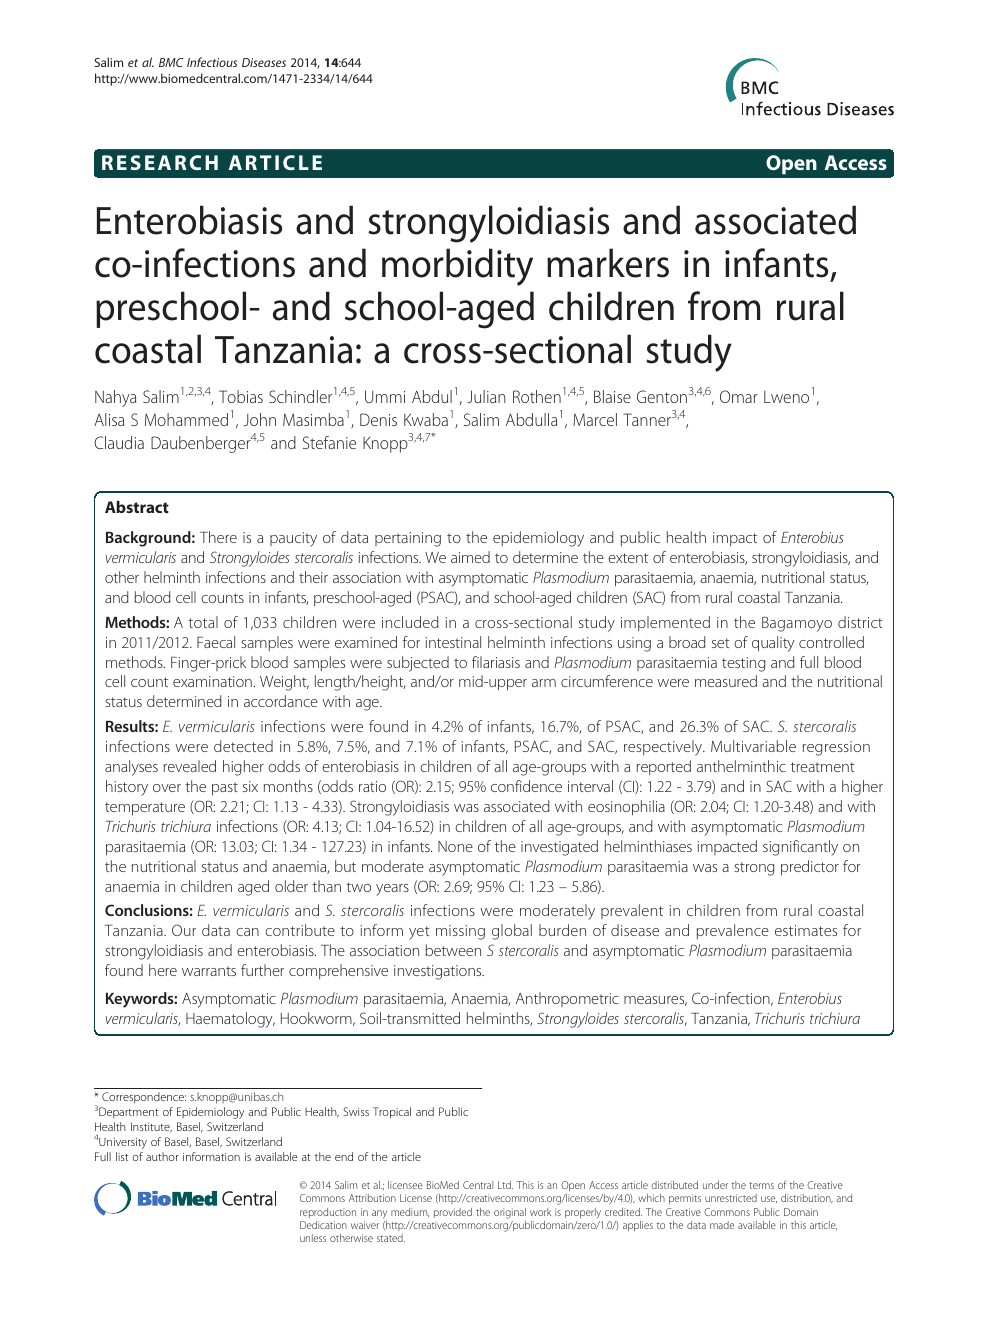 enterobiosis kezelési standard